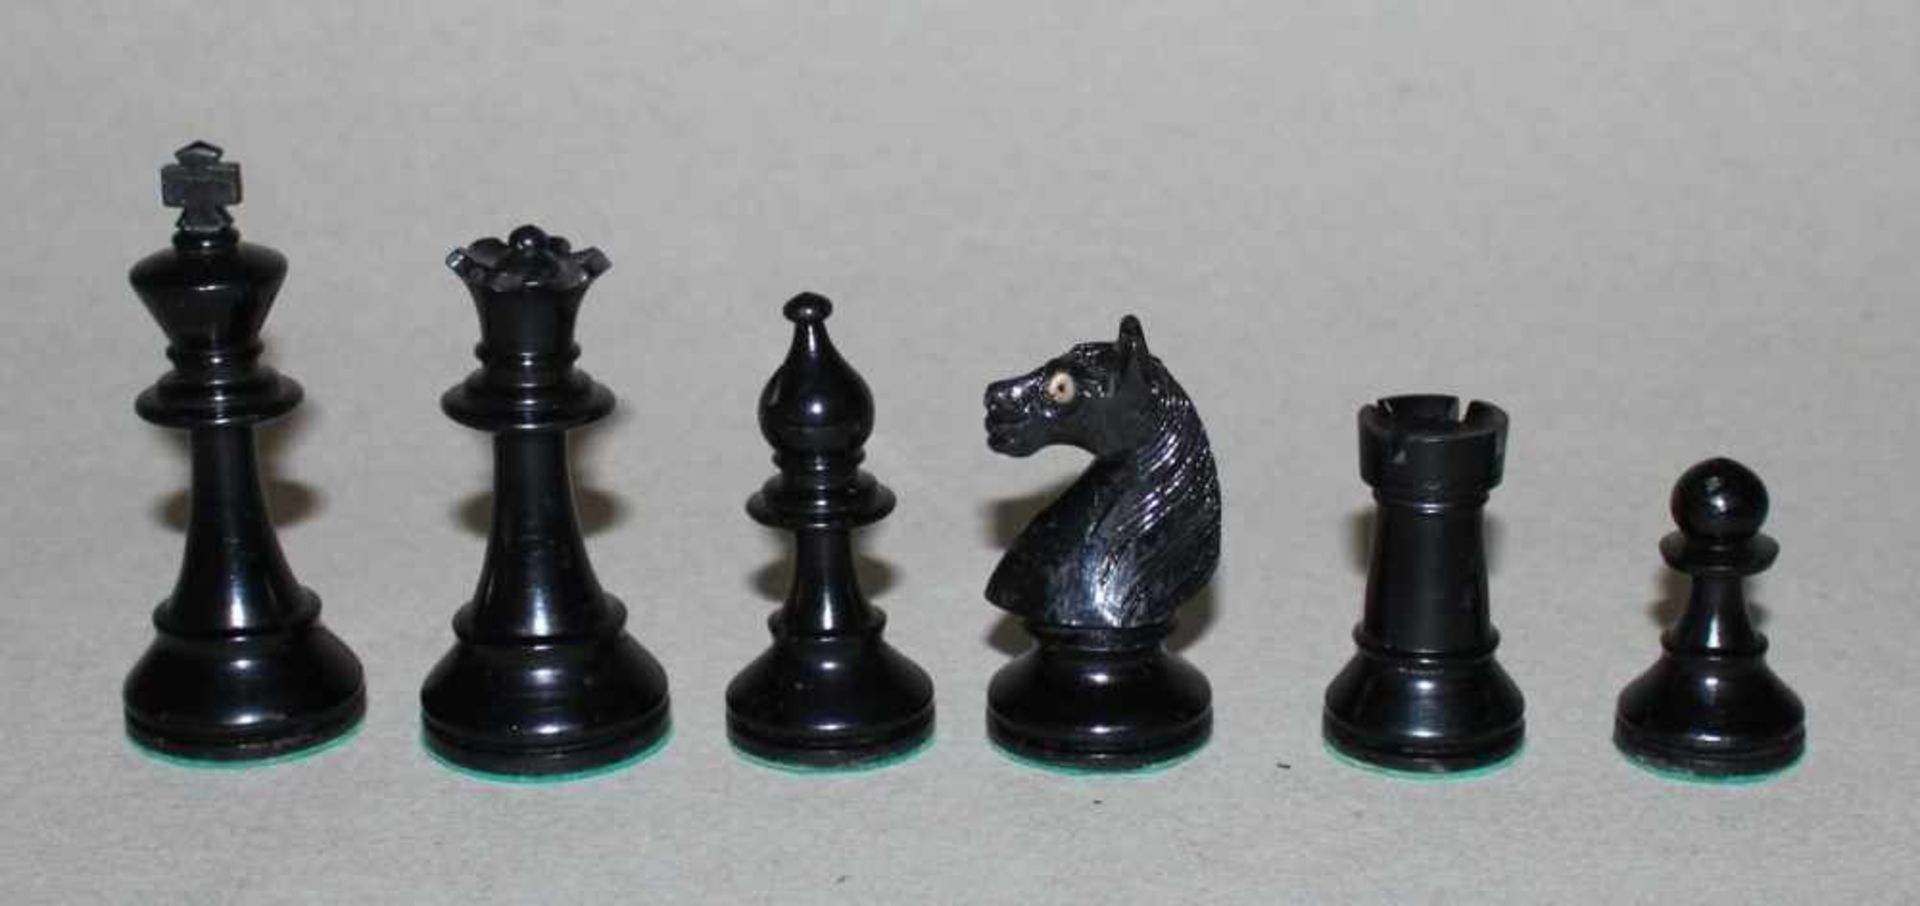 Europa. Zwei Staunton Schachspiele aus Holz.Eine Partei in schwarz, die andere naturfarben. - Bild 6 aus 6